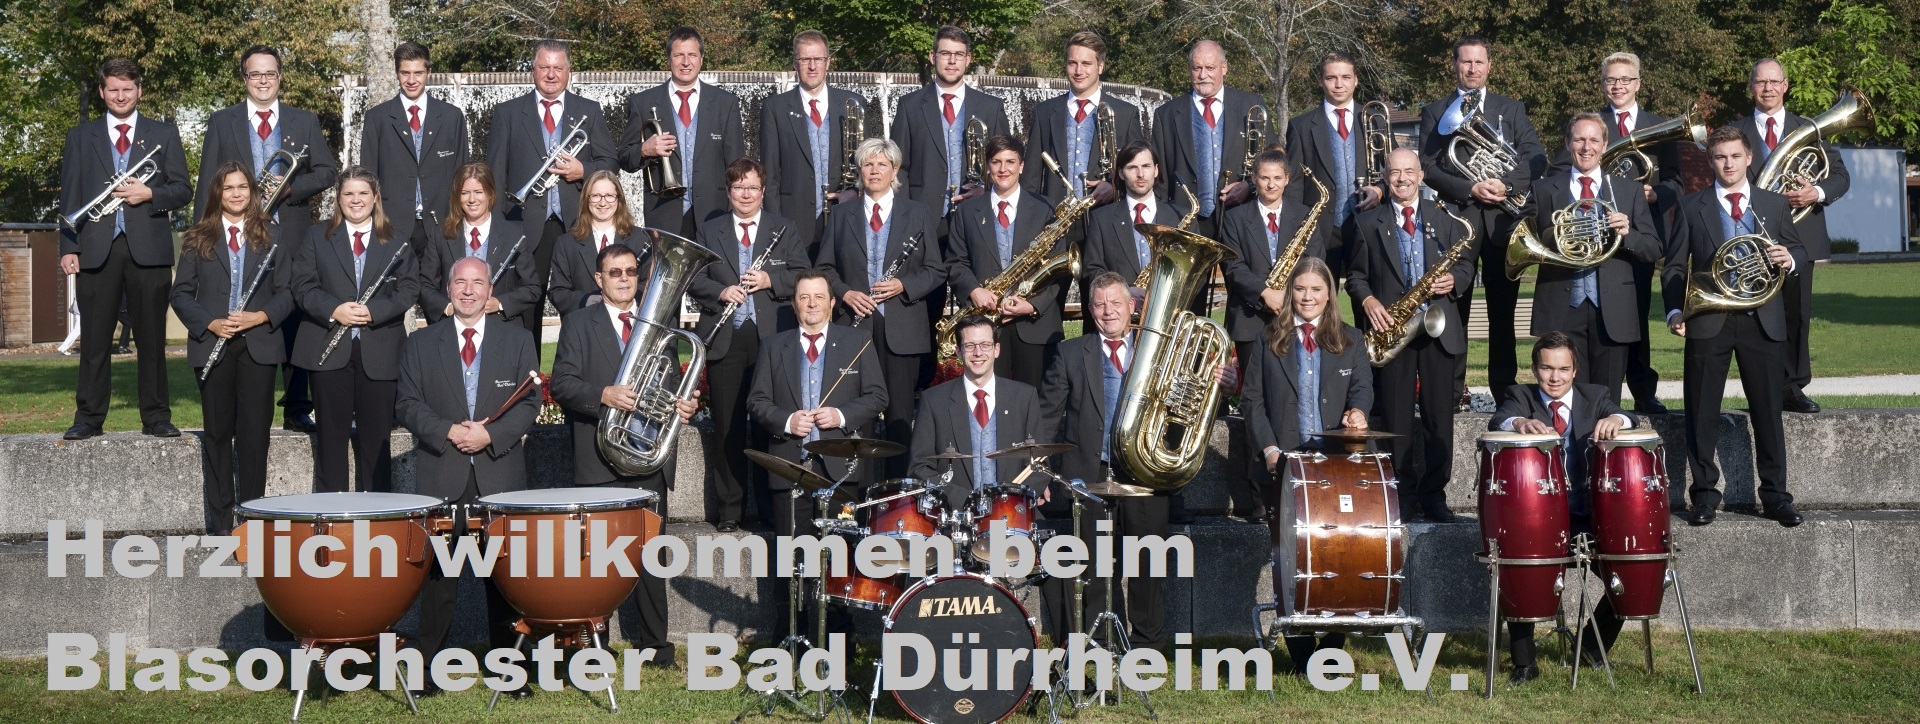 Blasorchester Bad Dürrheim e.V.